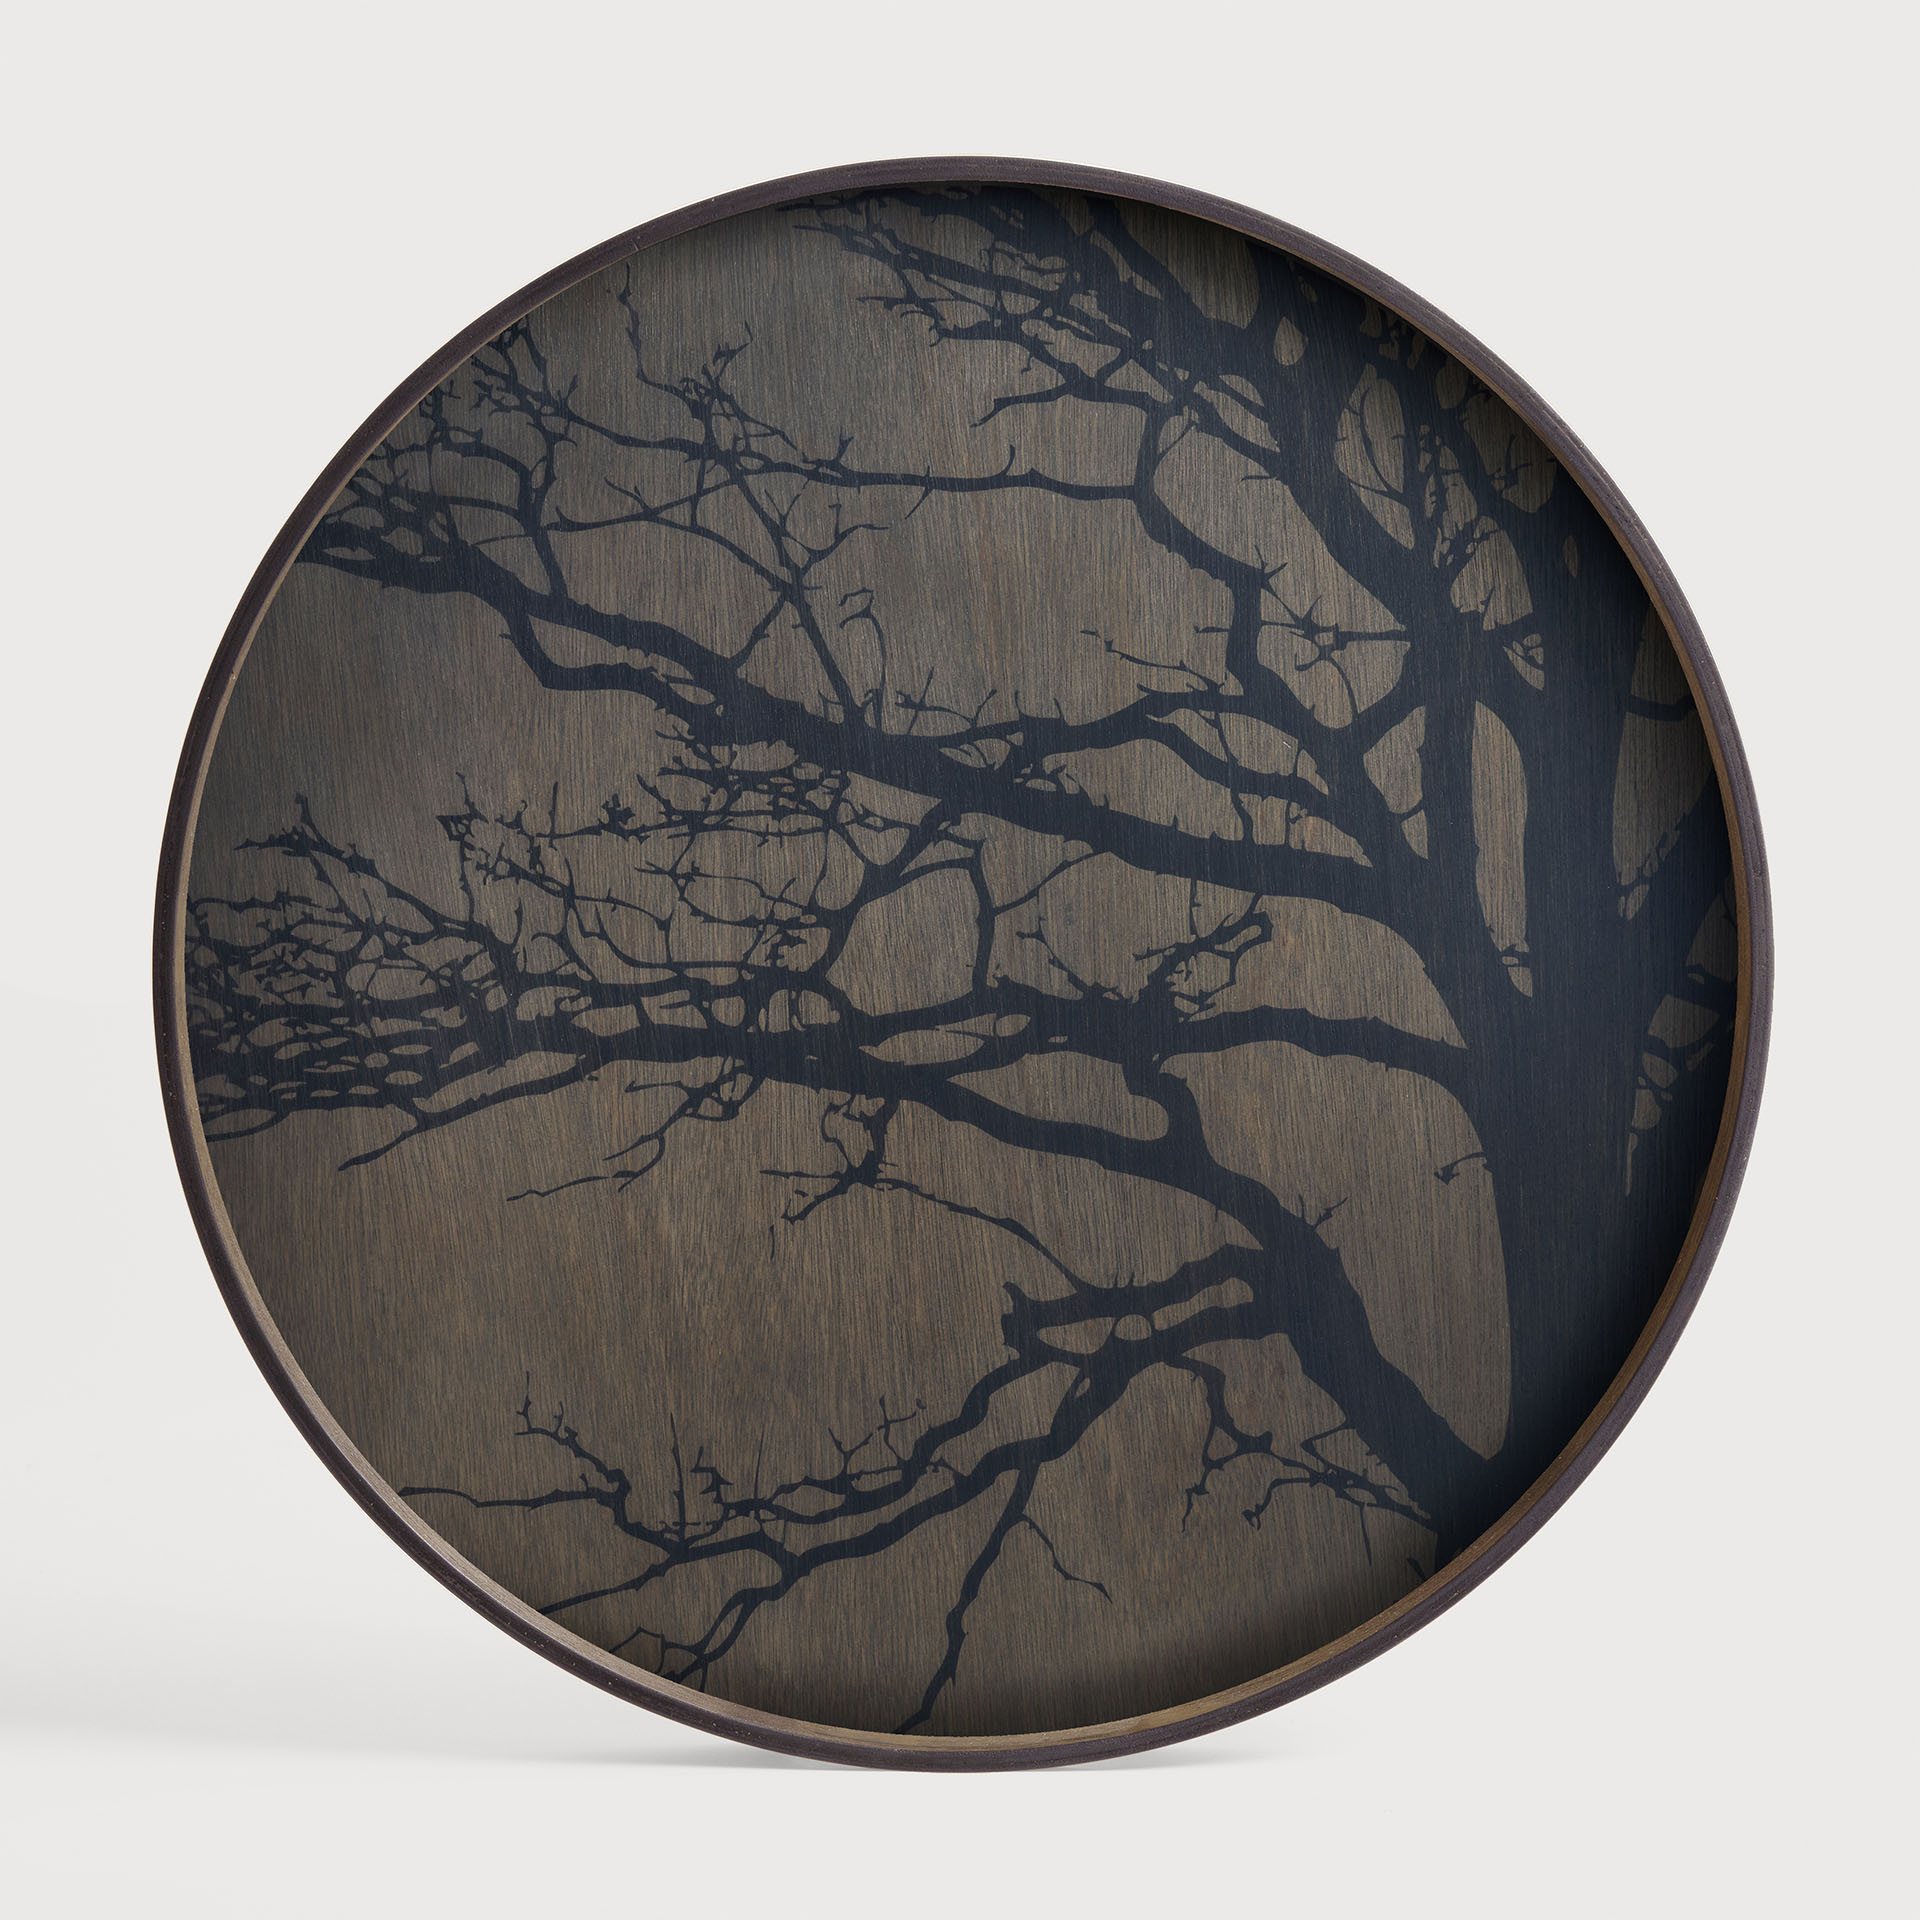 [20404*] Black Tree wooden tray